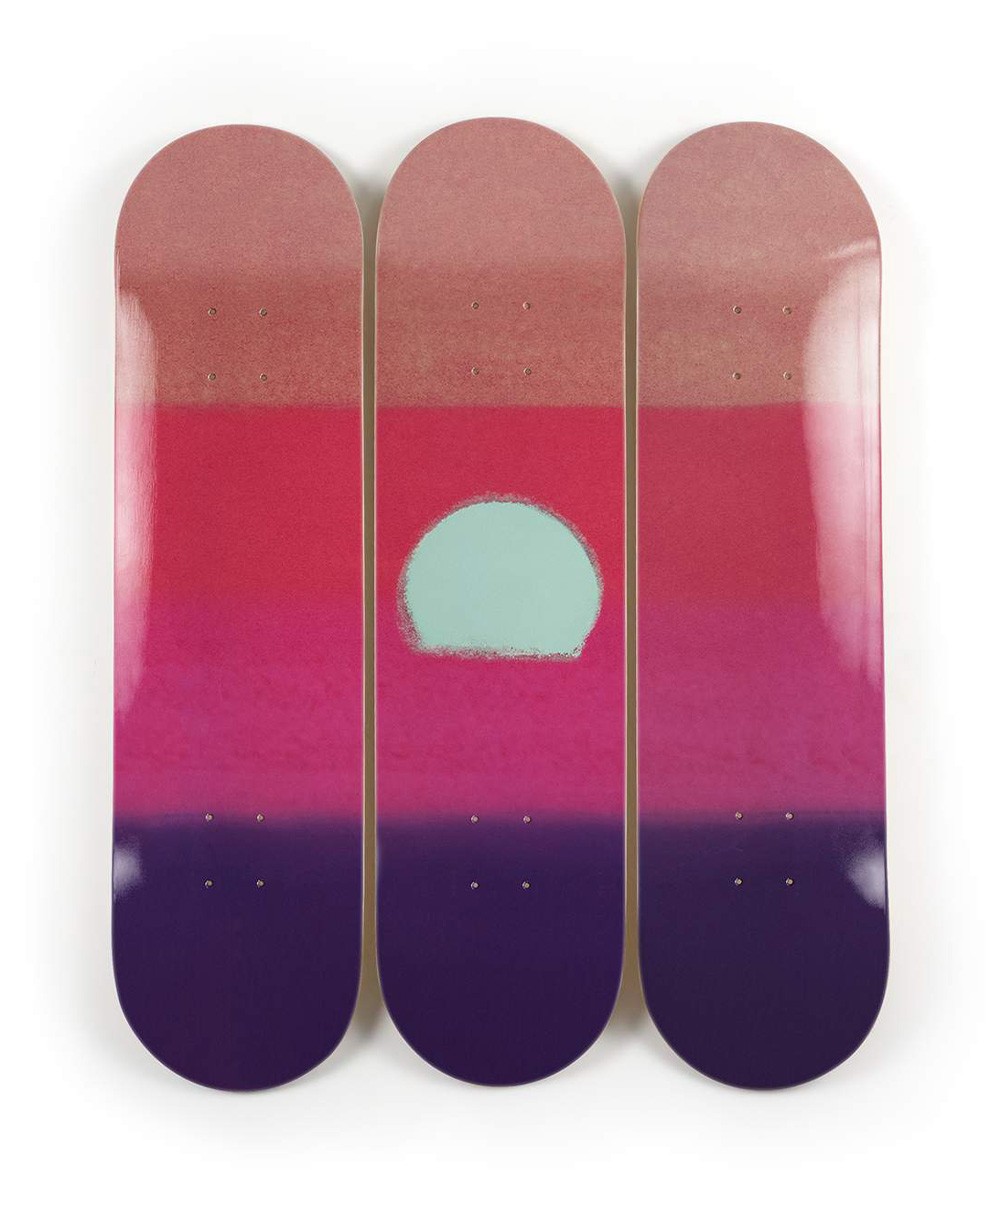 Produktbild "Sunset purple" designed by Andy Warhol von The Skateroom im RAUM Conceptstore